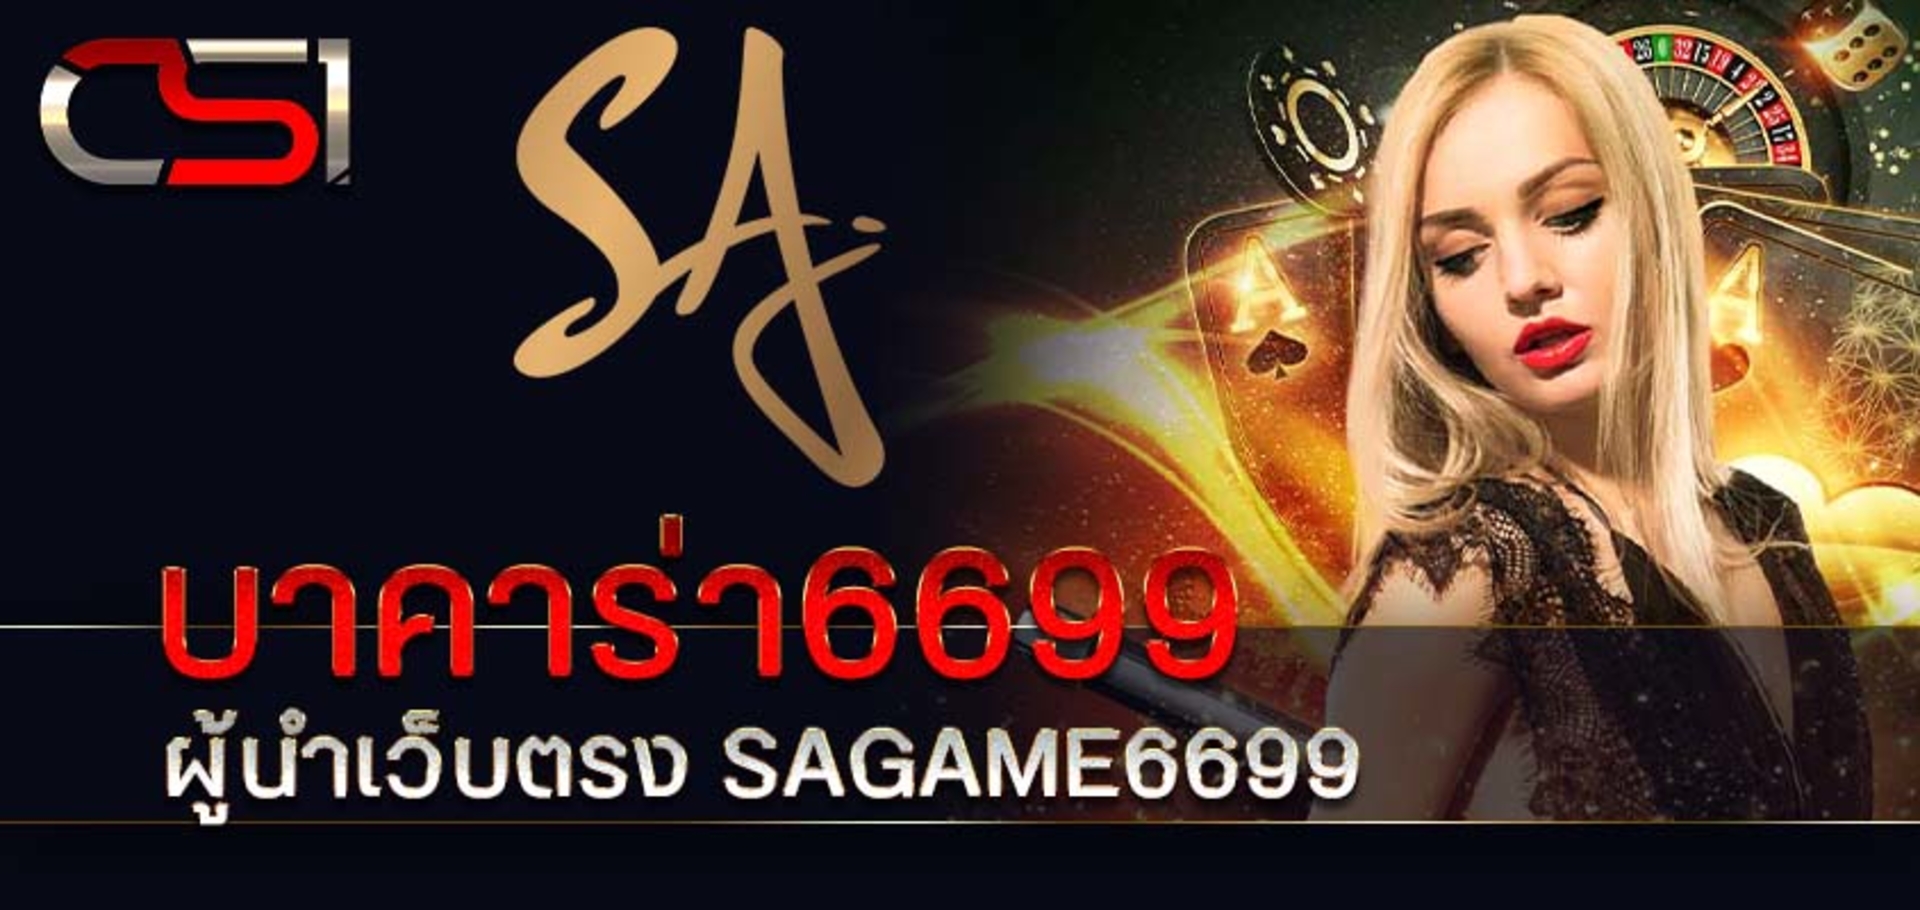 บาคาร่า6699 ผู้นำเว็บตรง SAGAME6699 ระบบออโต้ทั้งเว็บ มีทุกค่ายให้เลือกเล่น